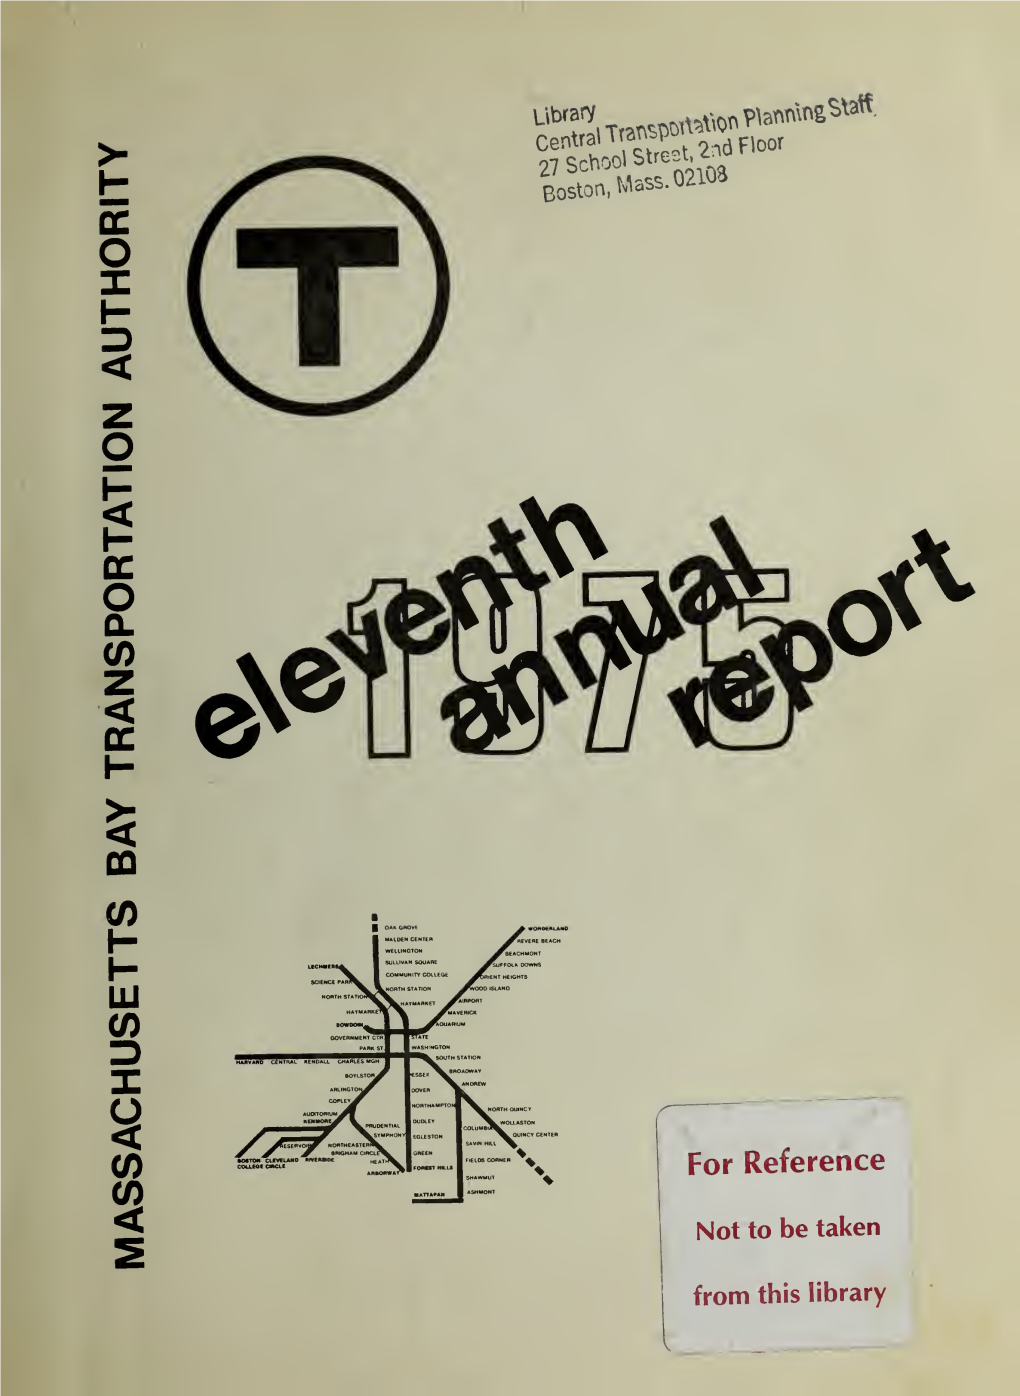 MASSACHUSETTS BAY TRANSPORTATION AUTHORITY for January 1 - December 31,1975